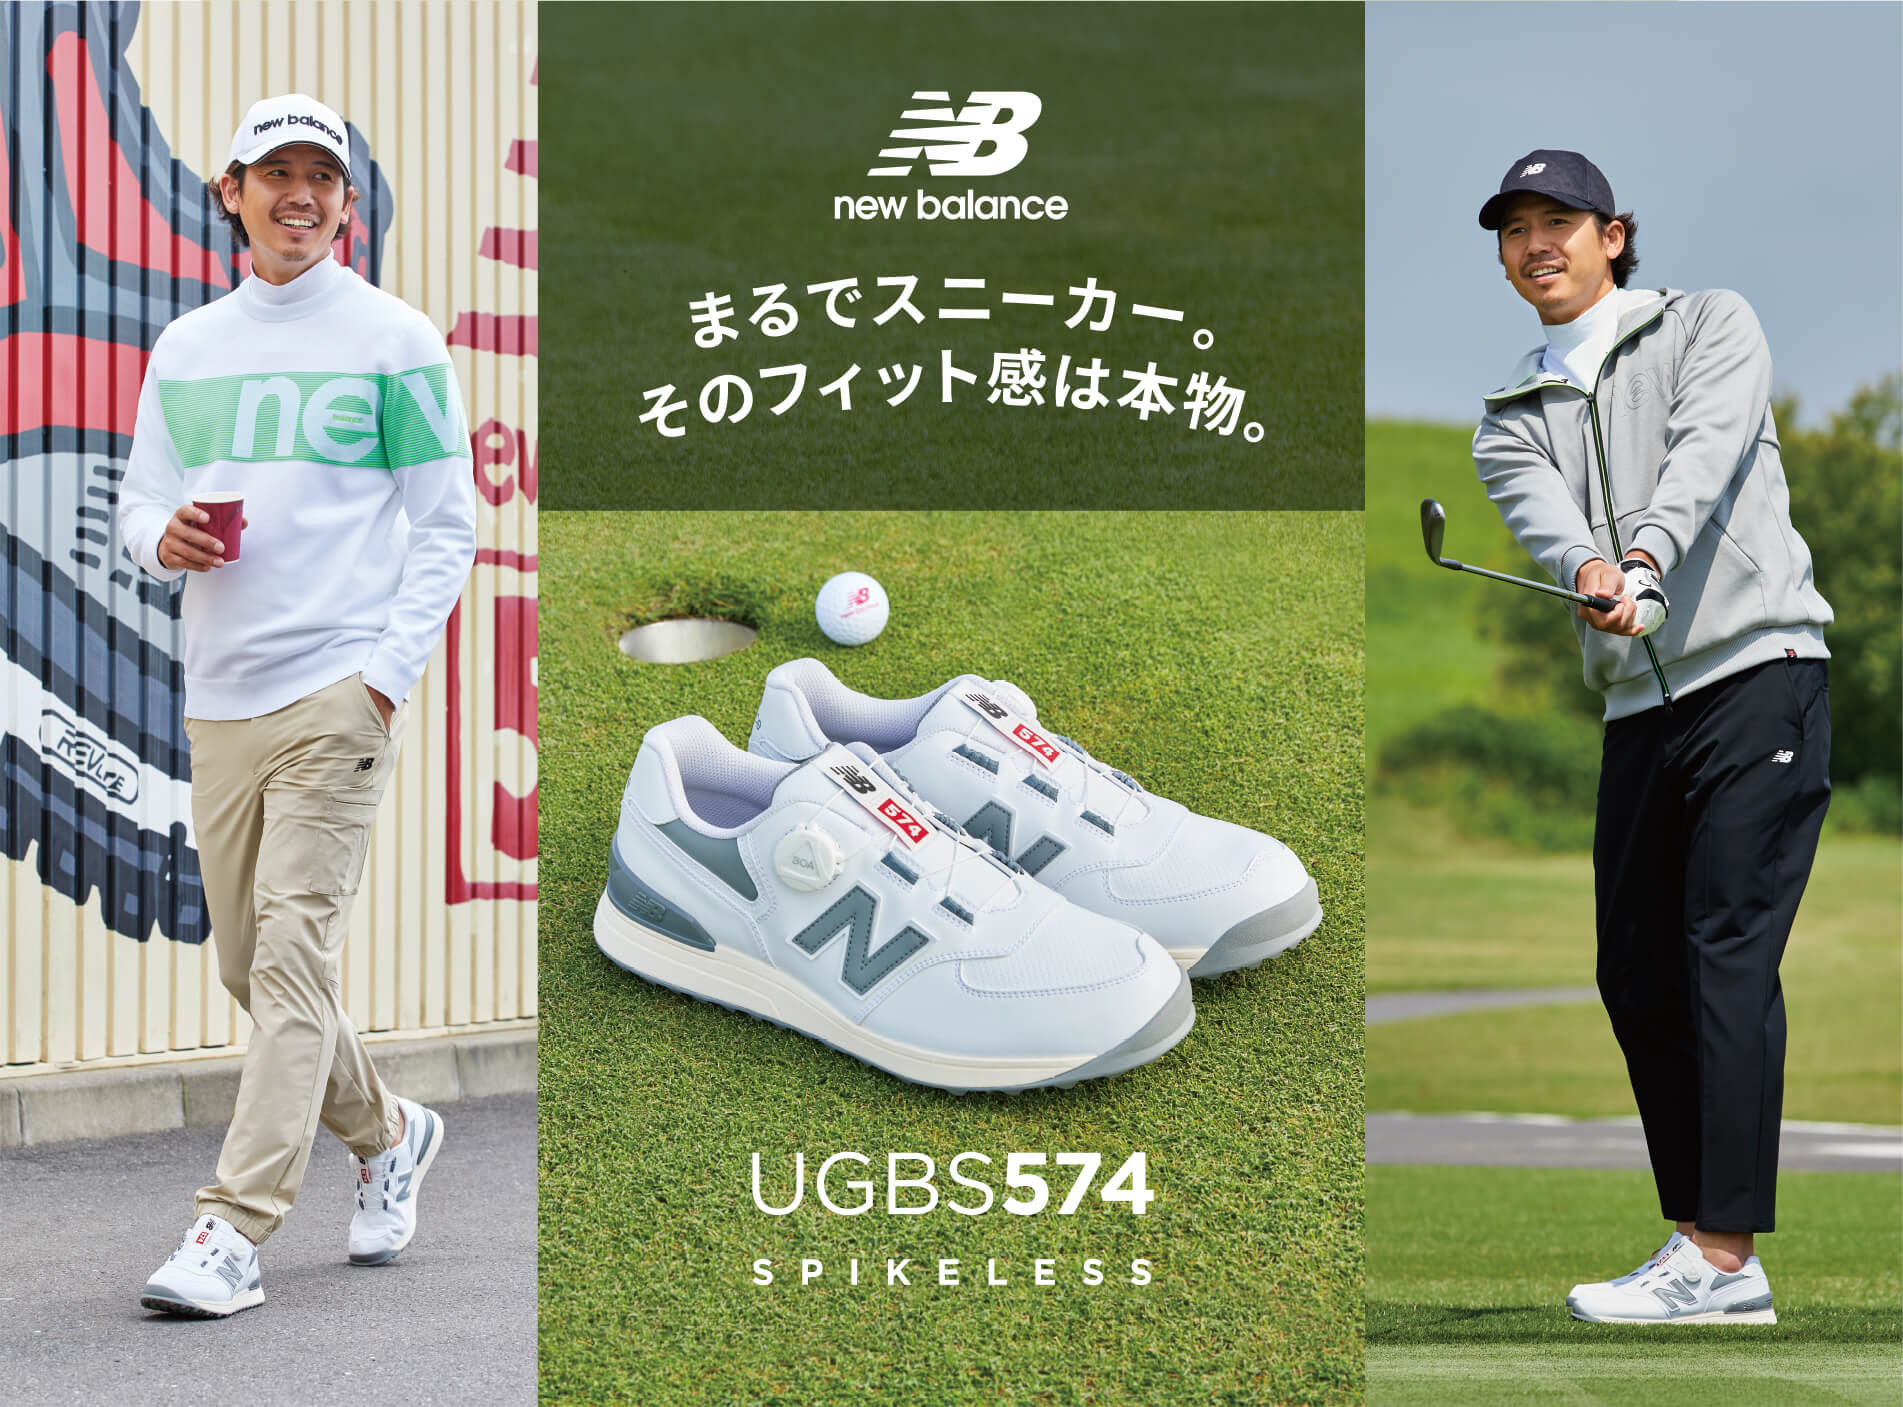 New Balanceゴルフシューズ「UGBS574シリーズ」プロが認める足入れ